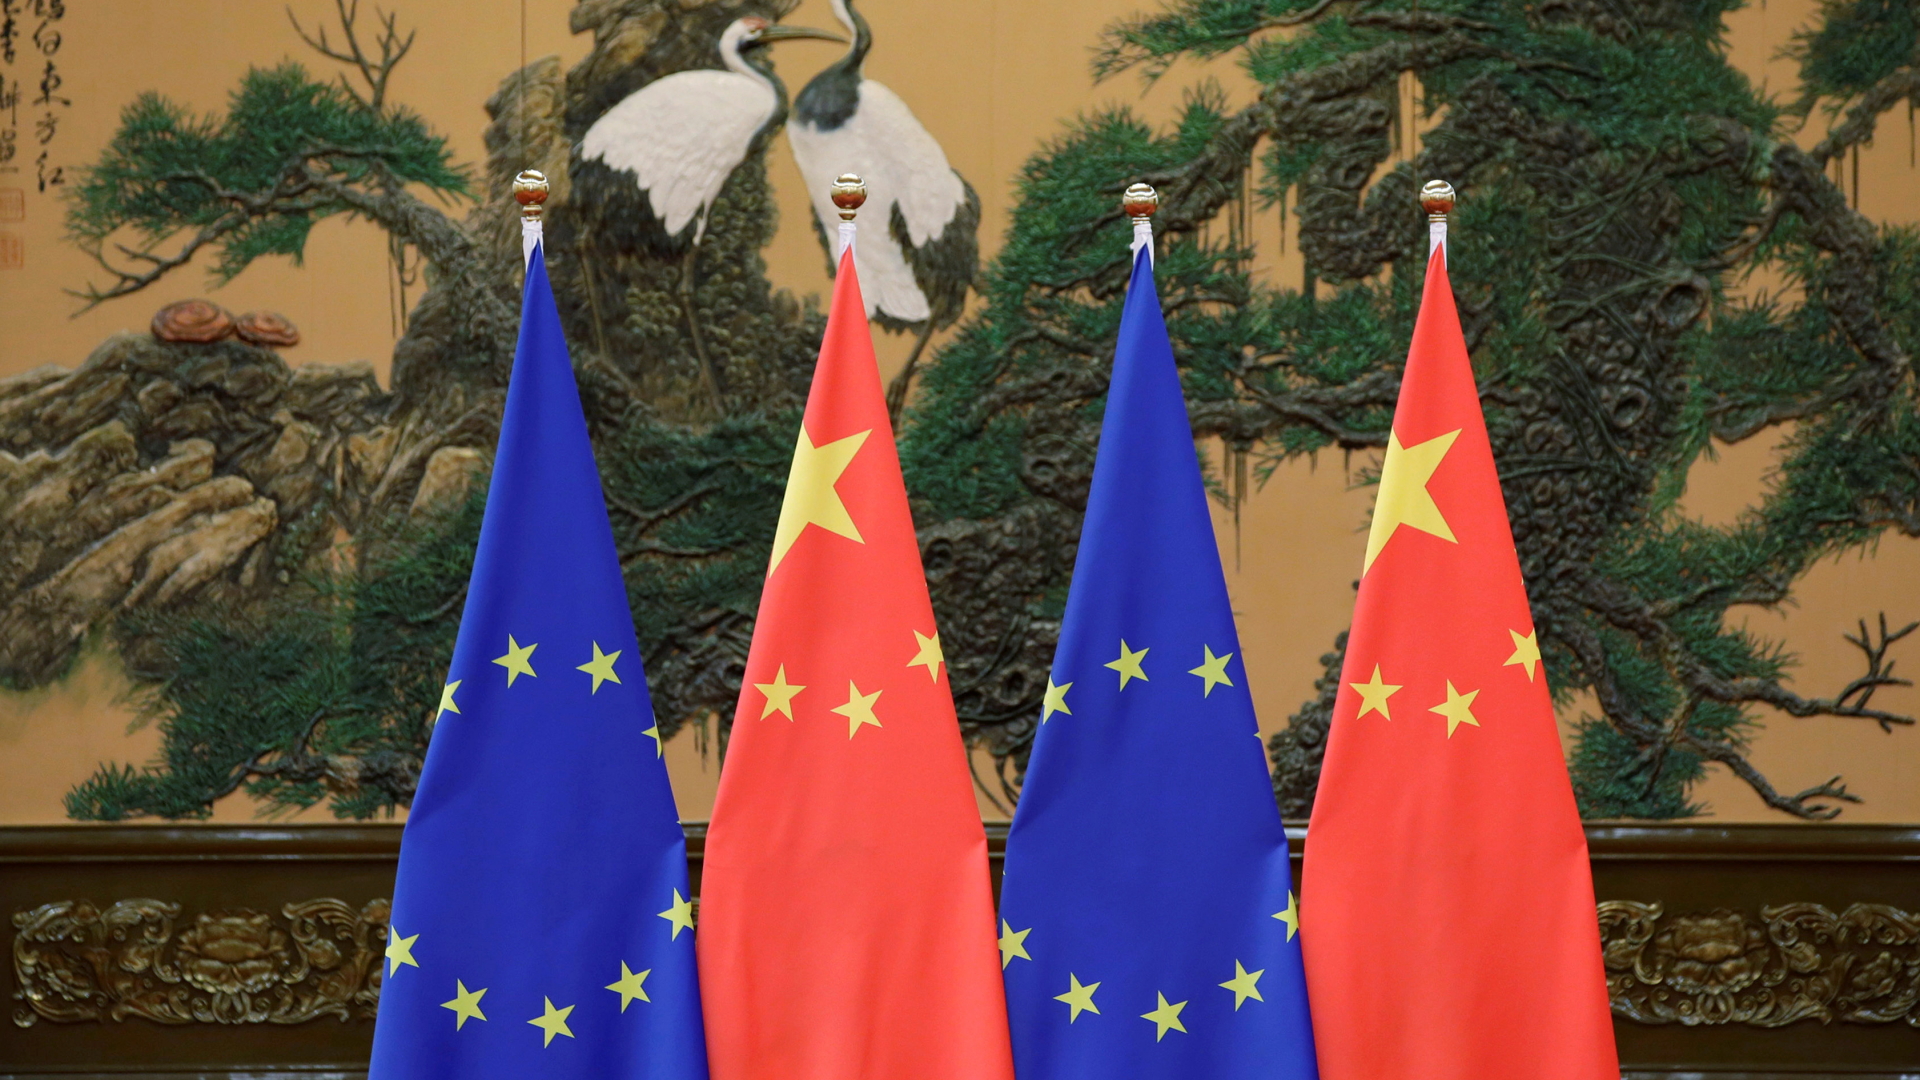 Flaggen von EU und China | REUTERS